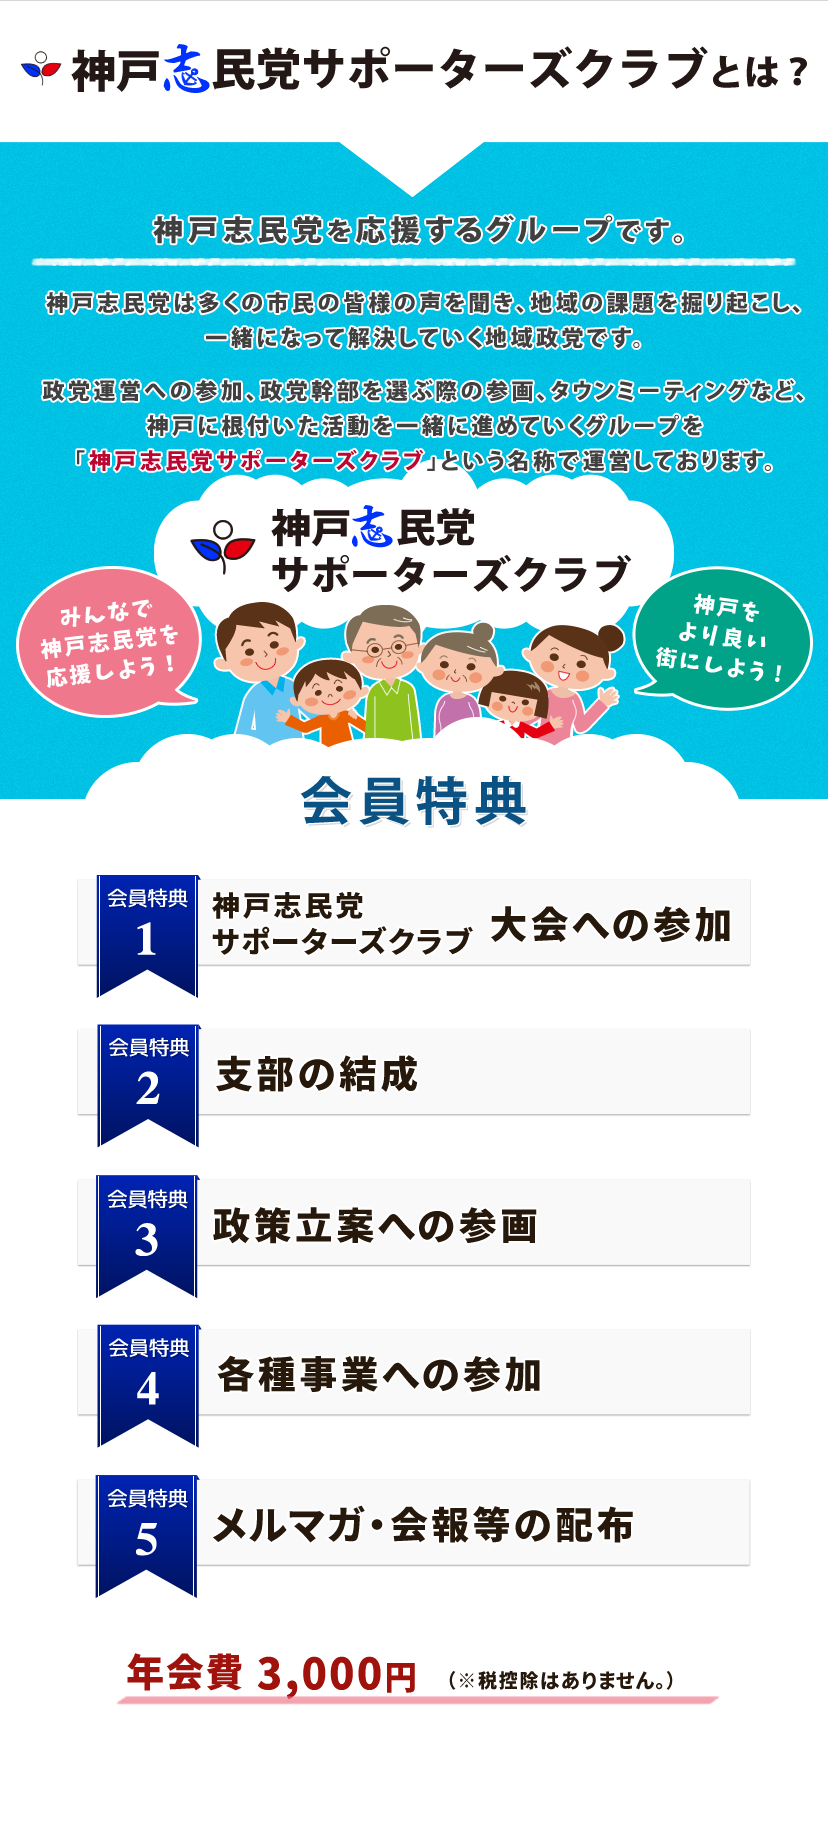 神戸志民党サポーターズクラブとは、神戸志民党を支援し、一緒になって組織運営をしていくチームです。